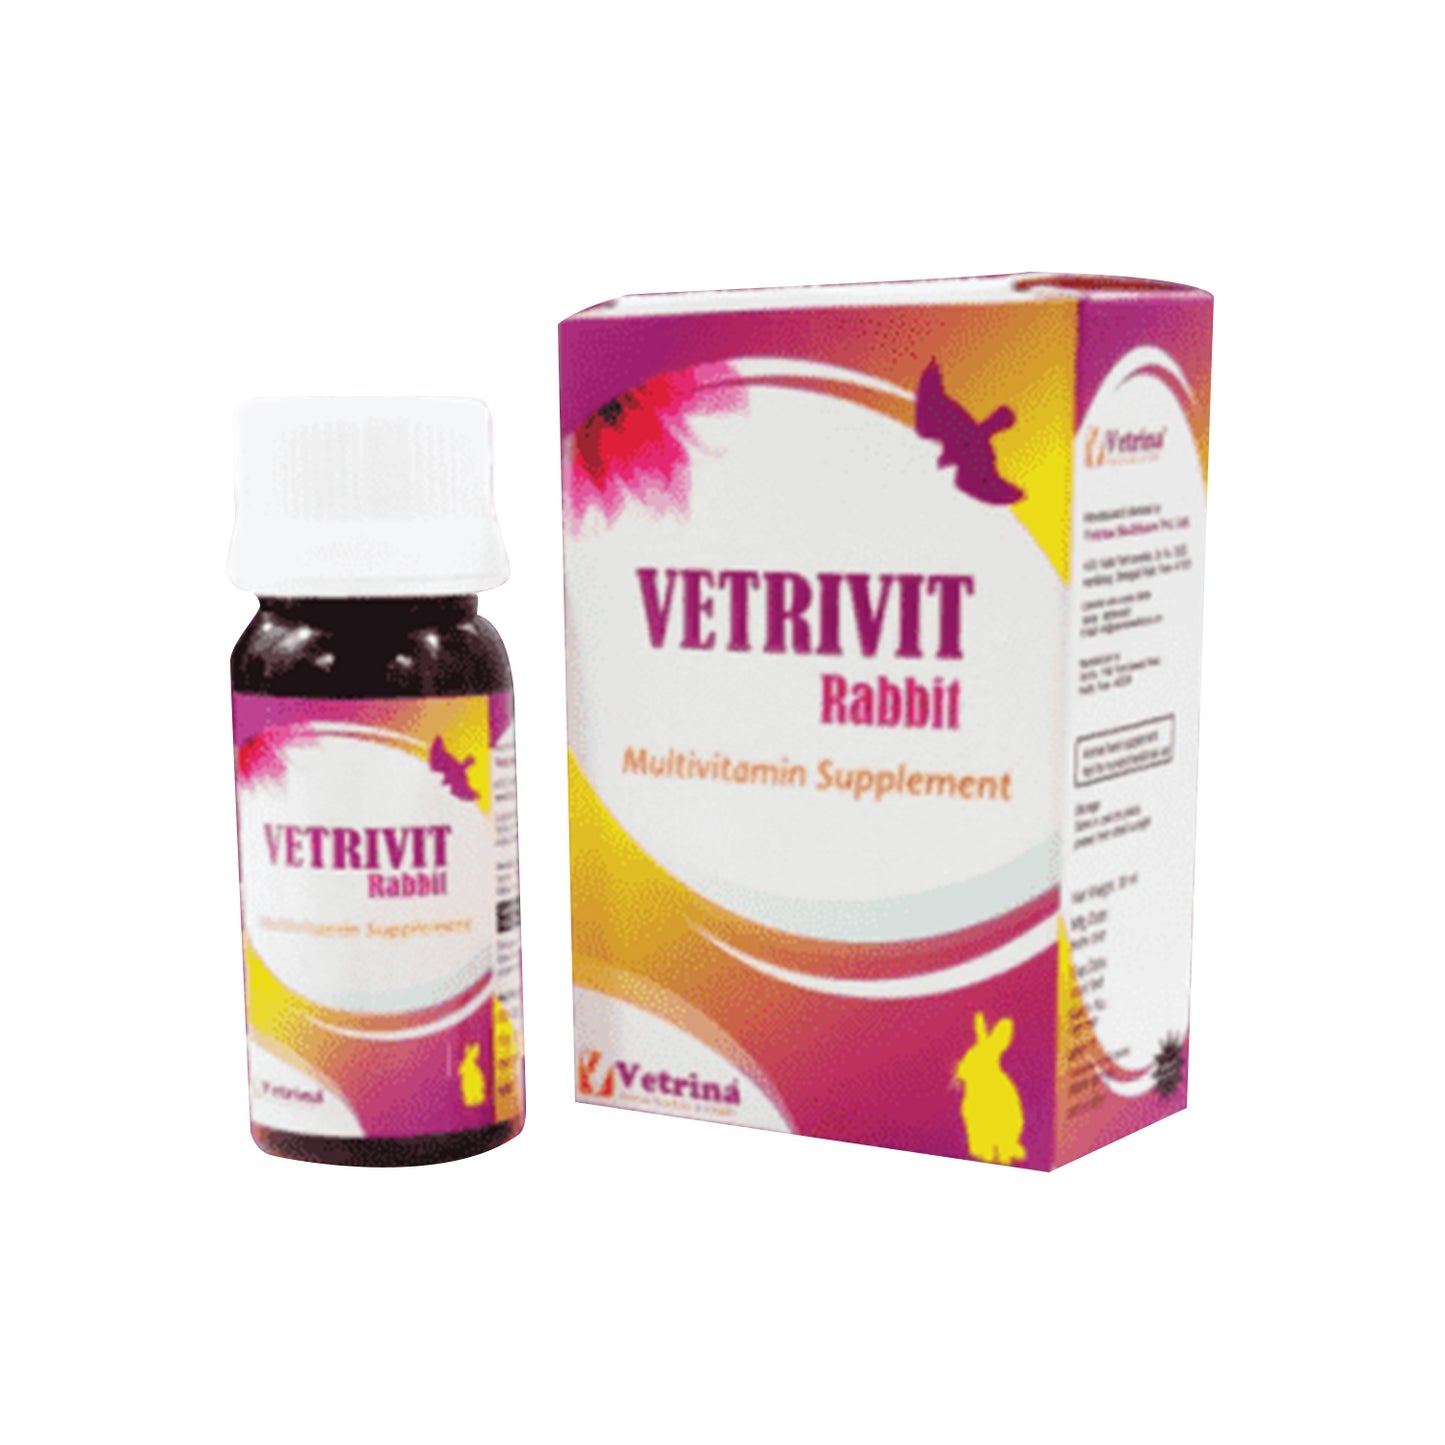 Vetrina - Vetrivit Rabbit Multivitamin Supplement